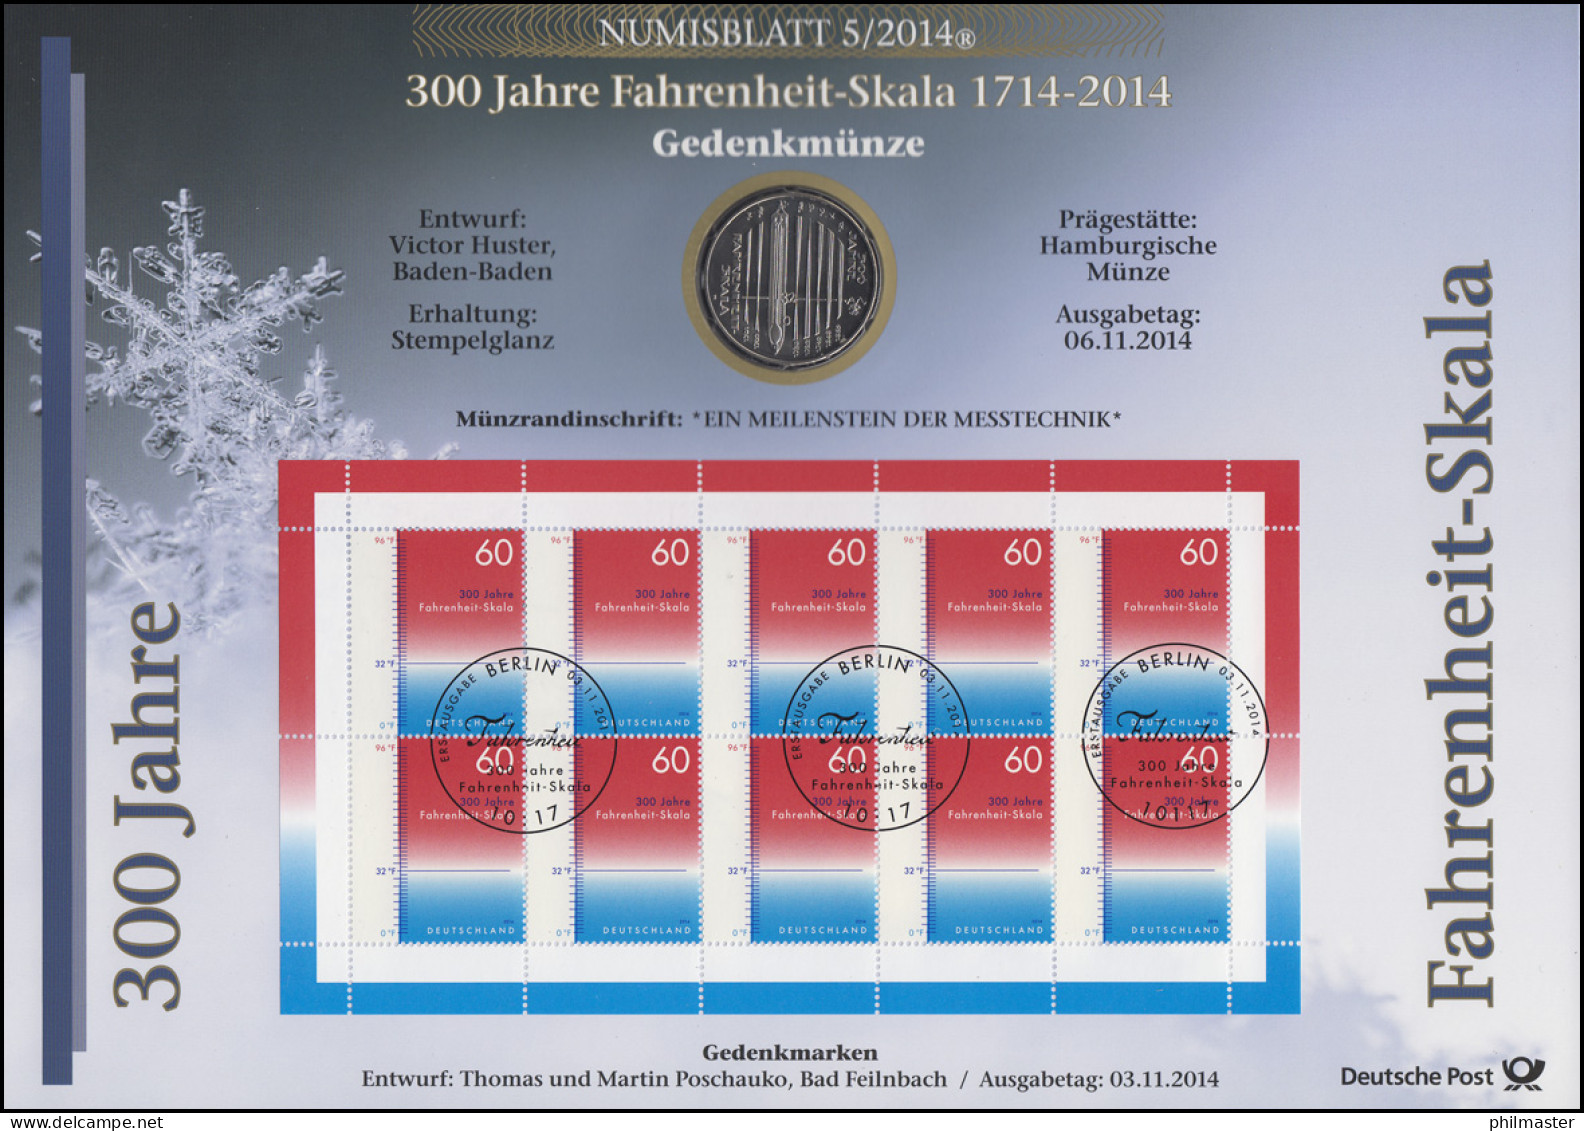 3109 300 Jahre Fahrenheit-Skala - Numisblatt 5/2014 - Numismatische Enveloppen